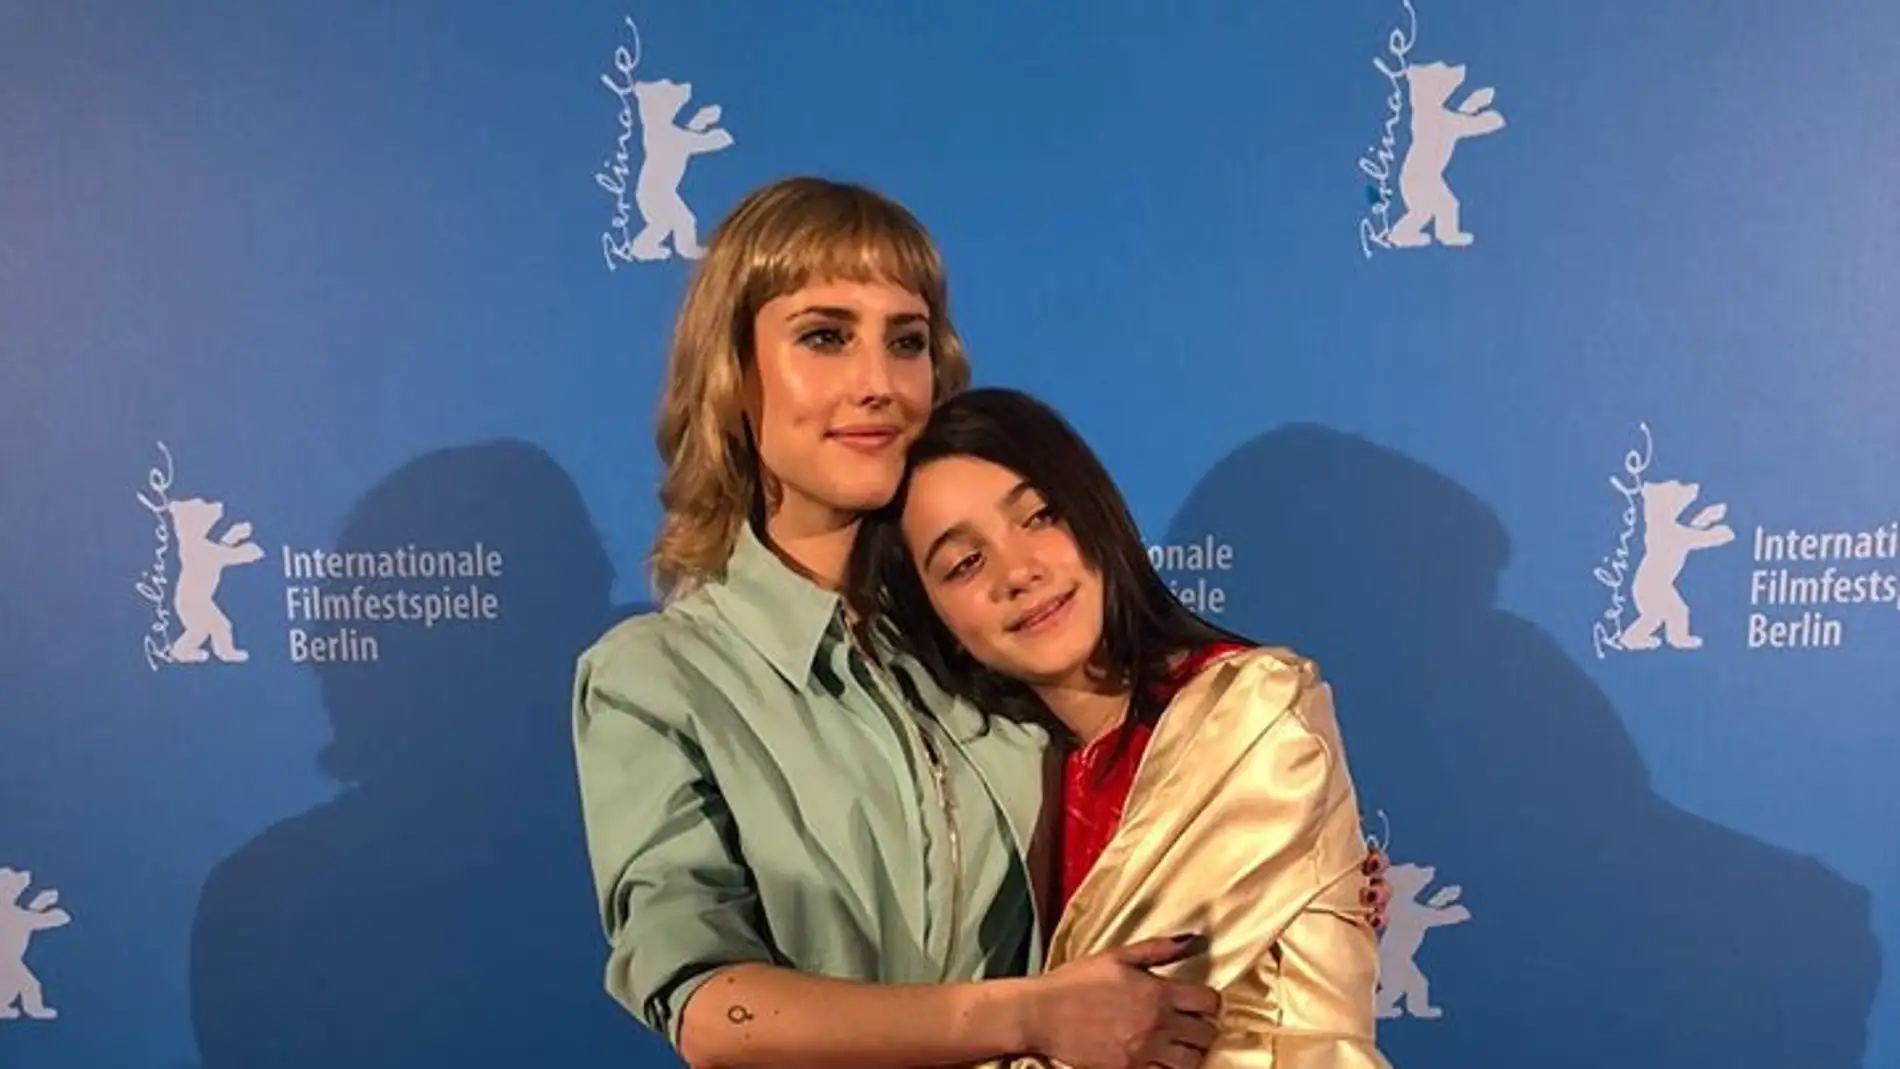 Las actrices Natalia de Molina y Andrea Fandos, protagonistas de 'Las niñas', en la Berlinale 2020